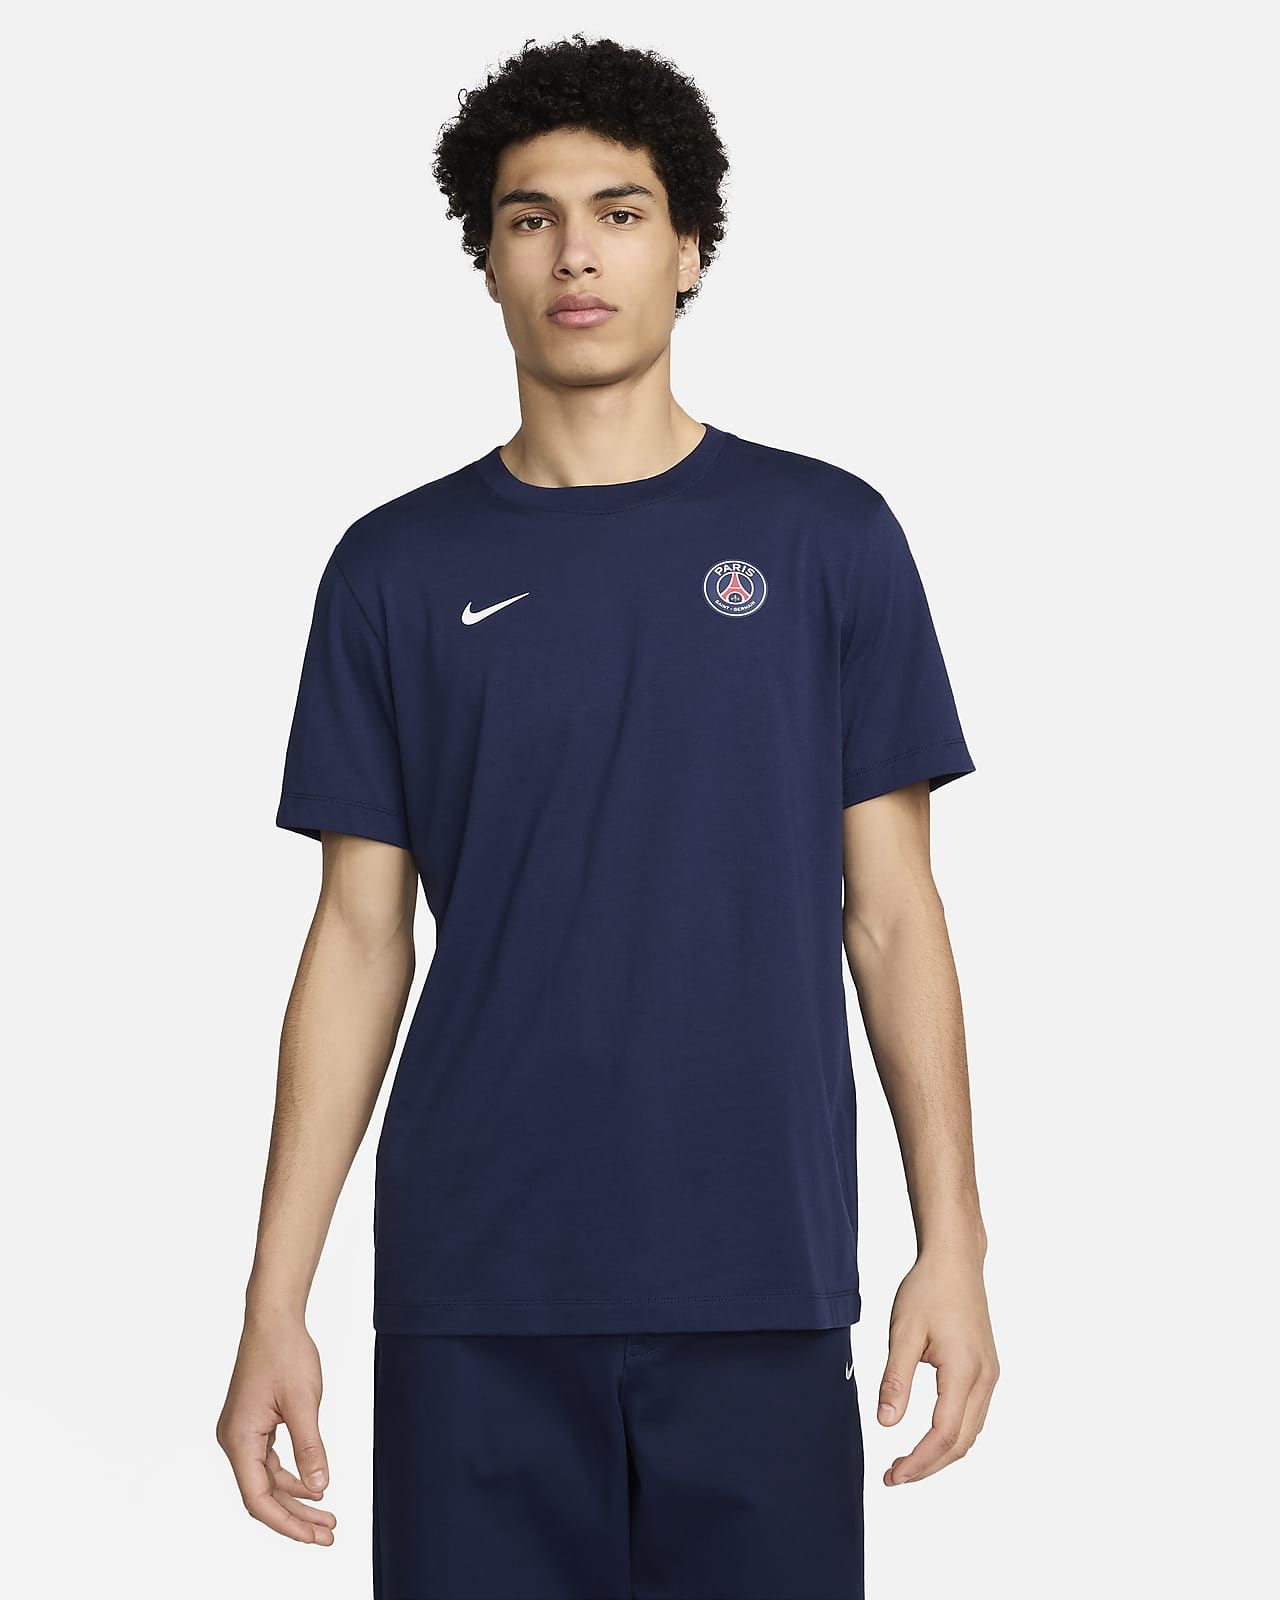 파리 생제르맹 에센셜 남성 나이키 축구 티셔츠